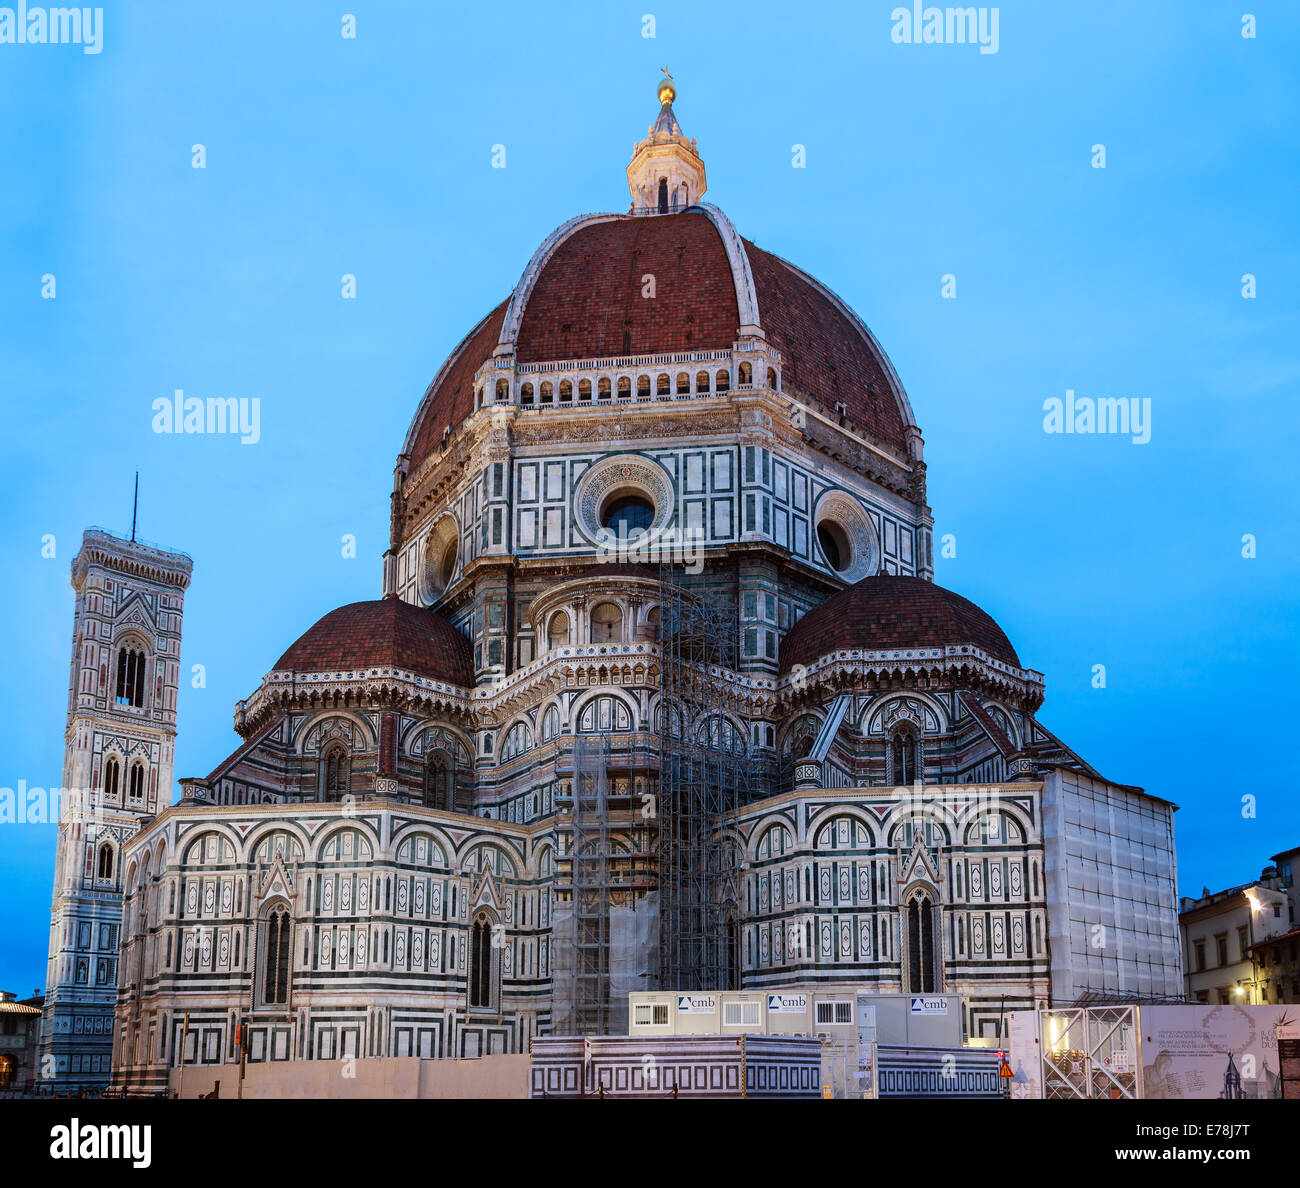 El estilo gótico Basílica di Santa Maria del Fiore Basílica de Santa María de la flor es la iglesia principal de Florencia, Italia. Foto de stock